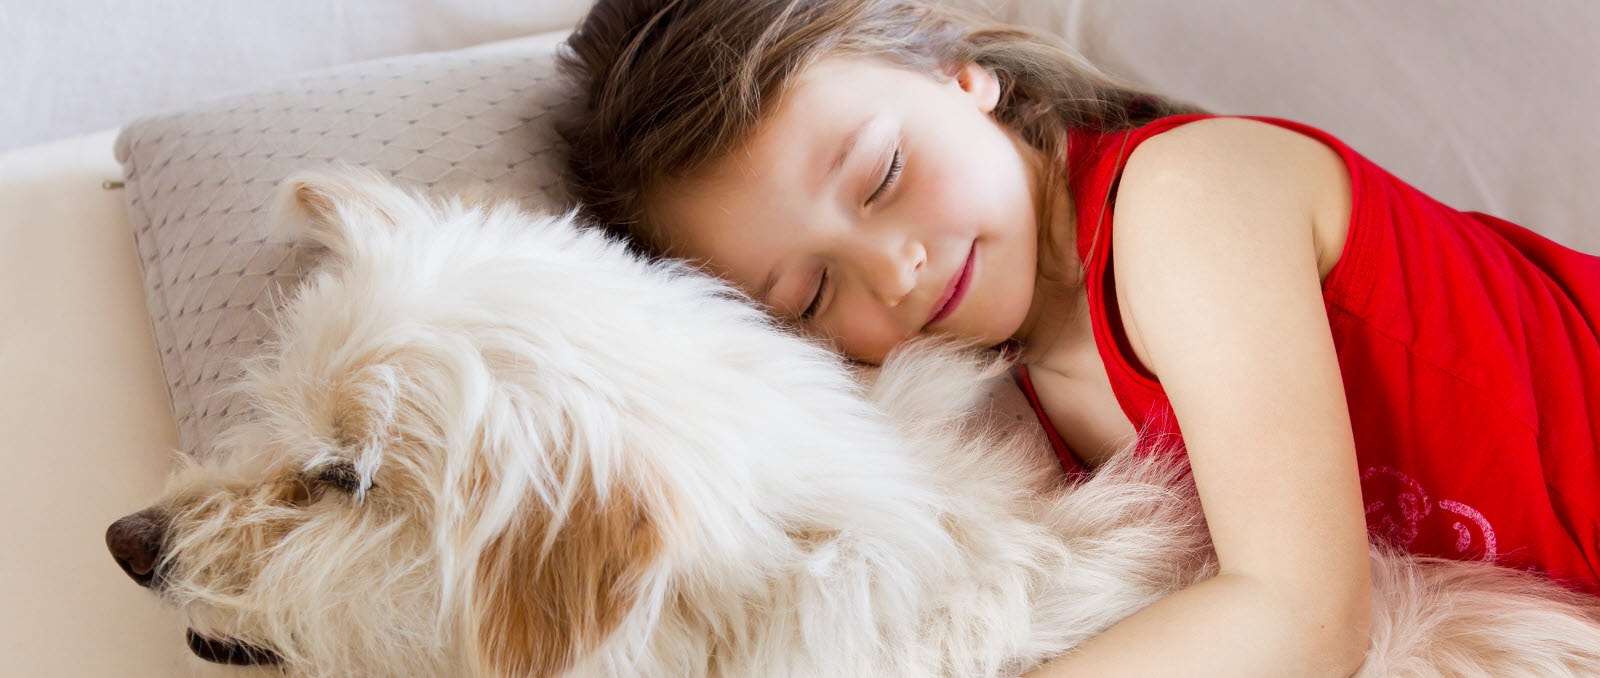 Ένα κορίτσι κοιμάται ήρεμα, αγκαλιά με τον σκύλο της.